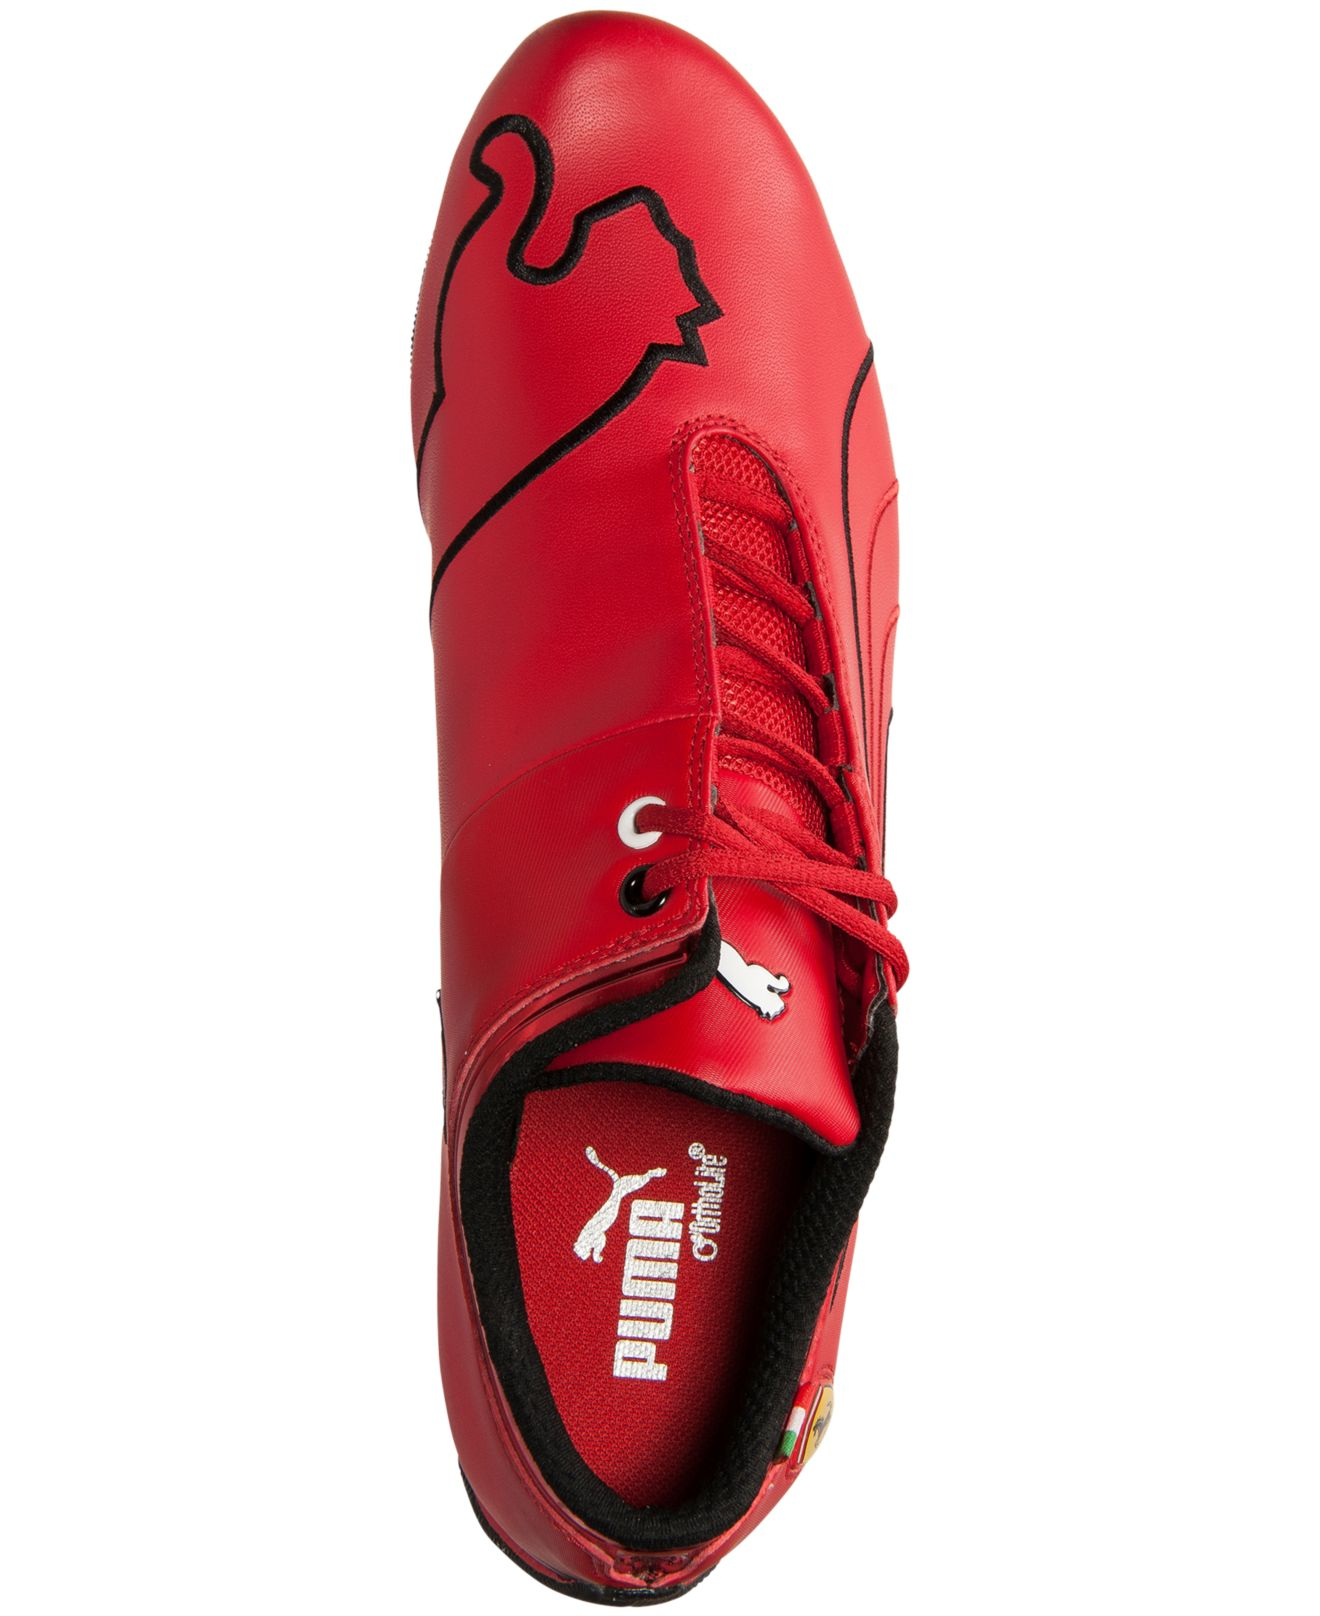 PUMA Lace Men's Future Cat M1 Sf Ferrari Casual Sneakers From Finish ...